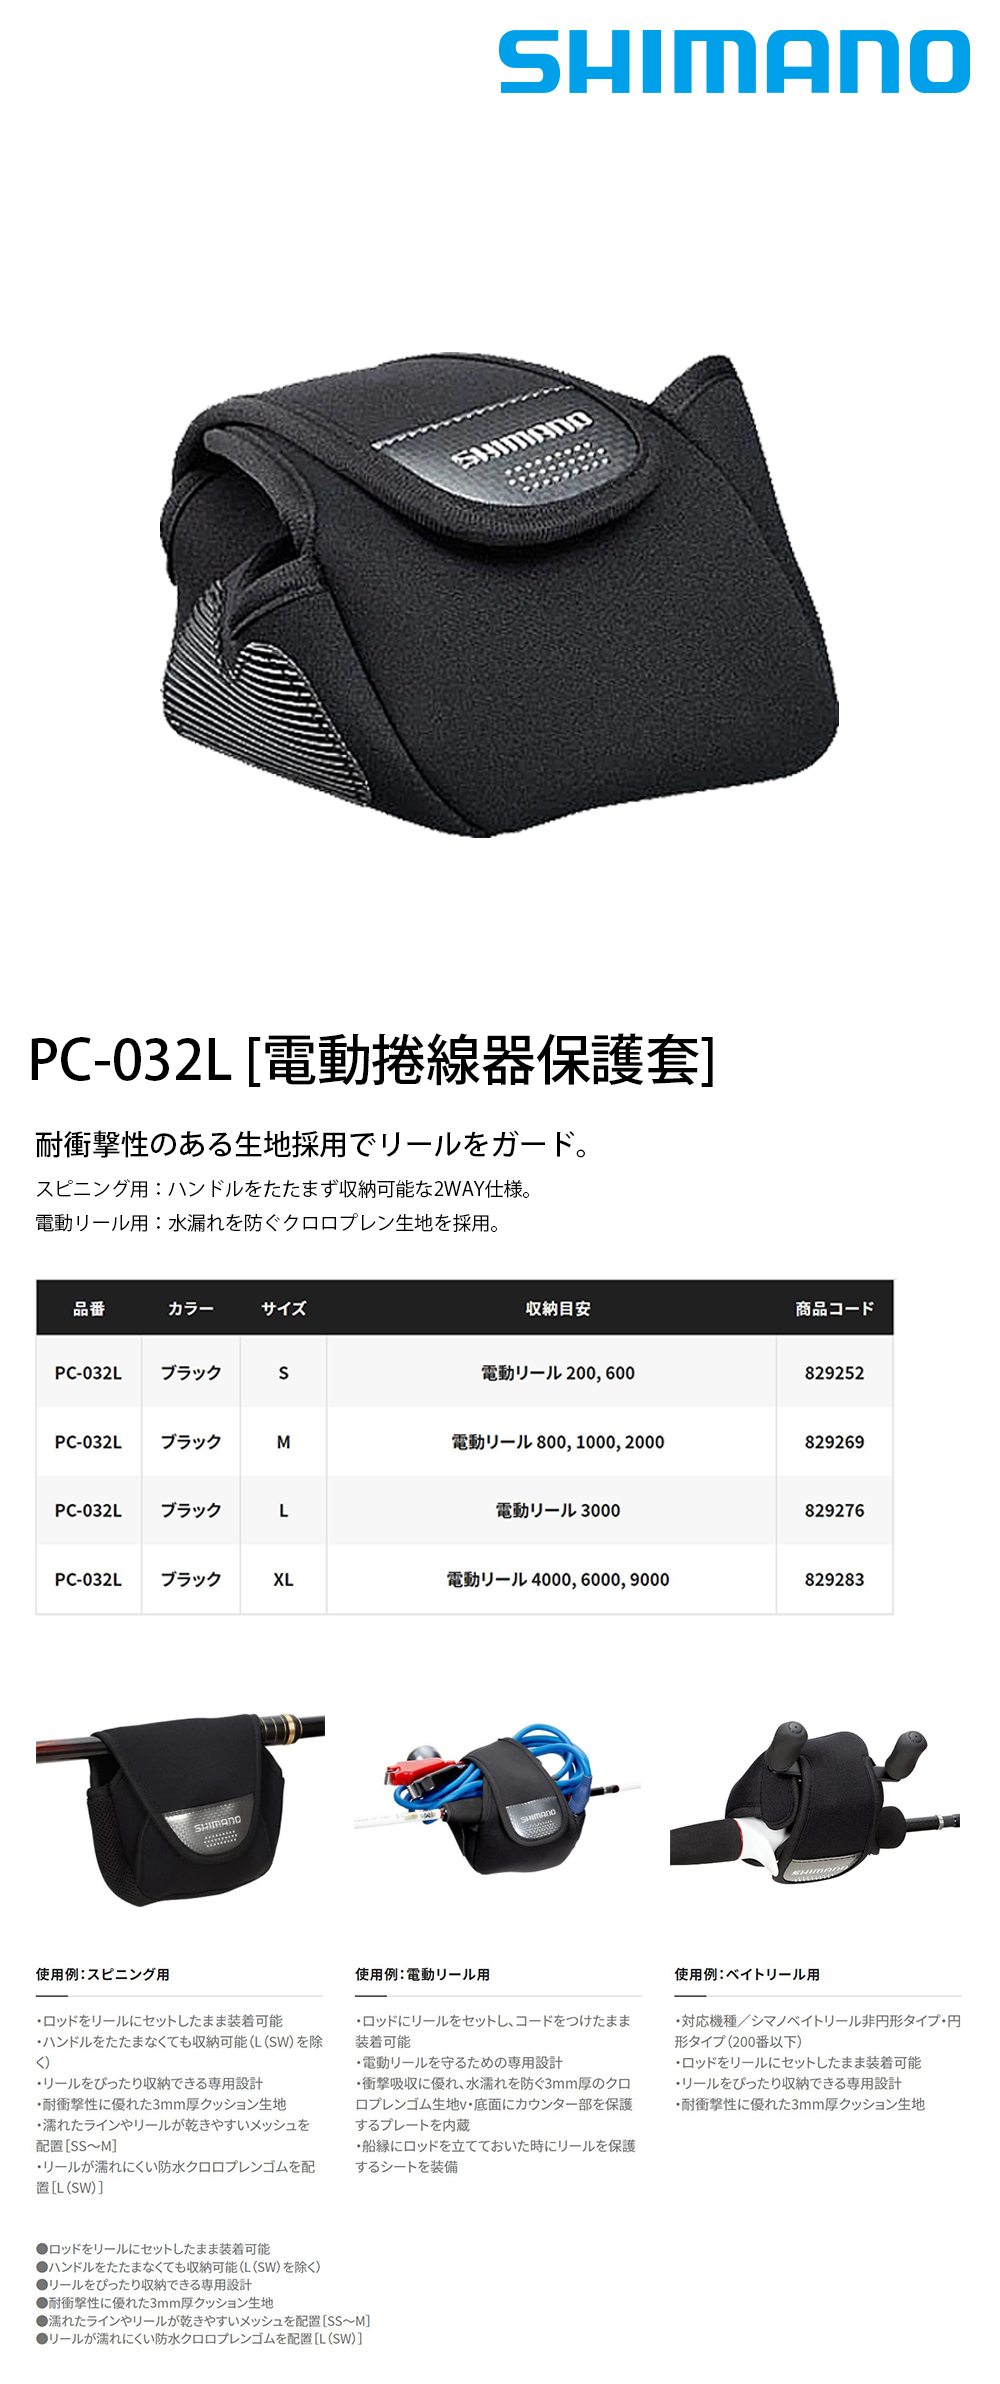 シマノ(SHIMANO) リールケース リールガード (電動リール用) PC-032L ブラック L 829276